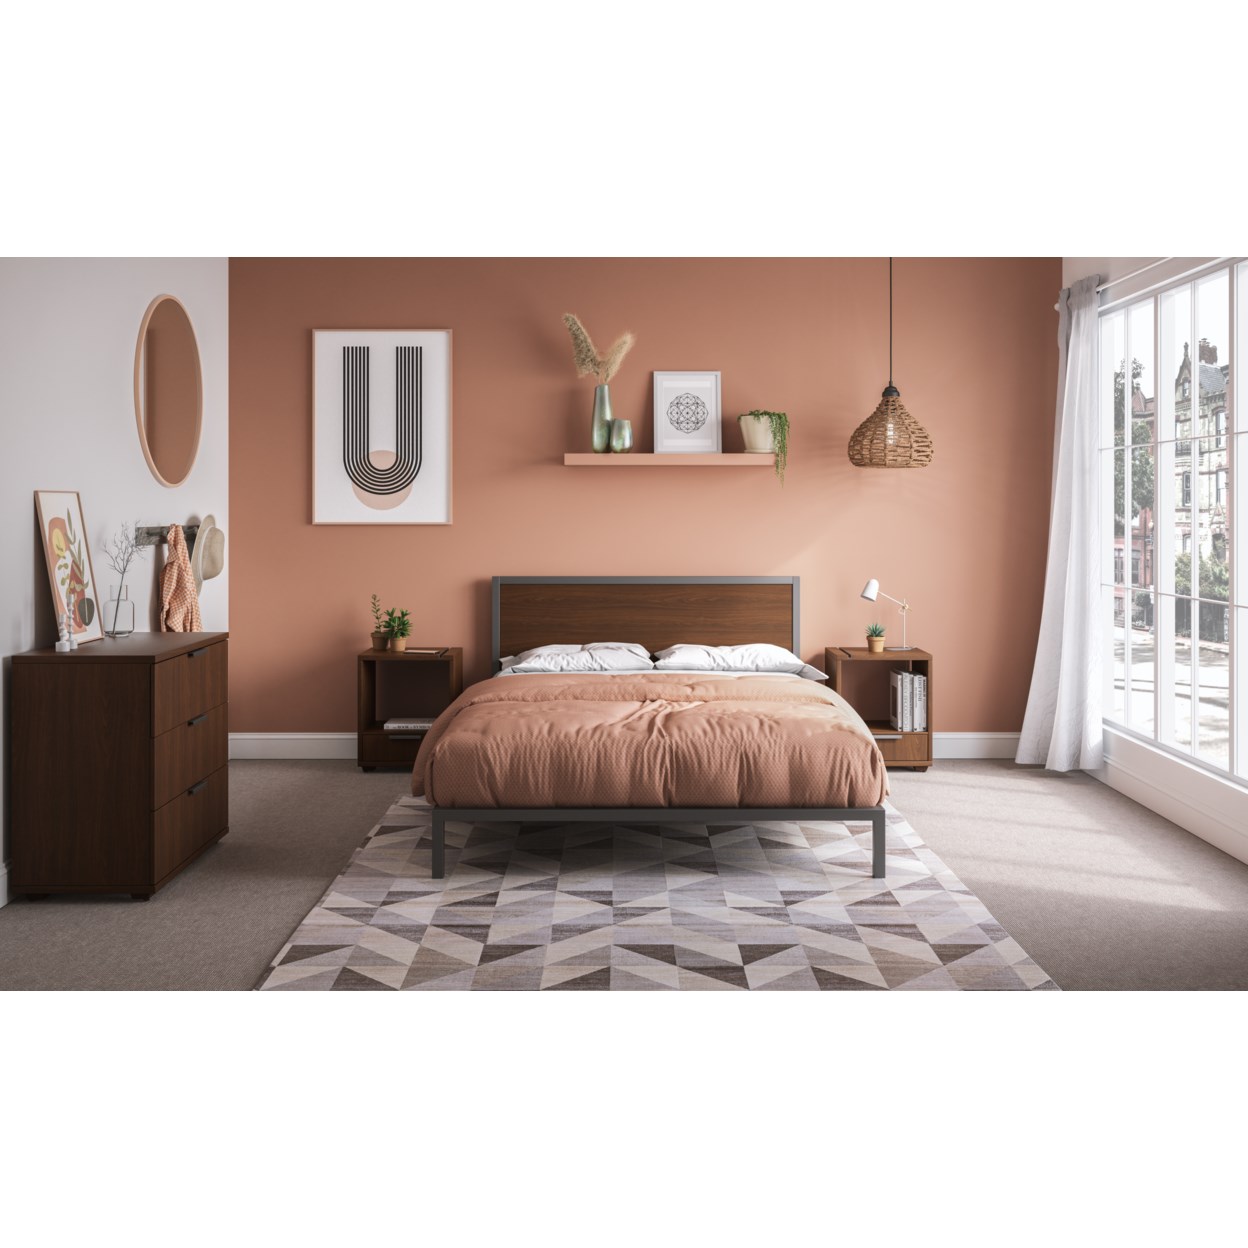 homestyles Merge 4-Piece Queen Bedroom Set